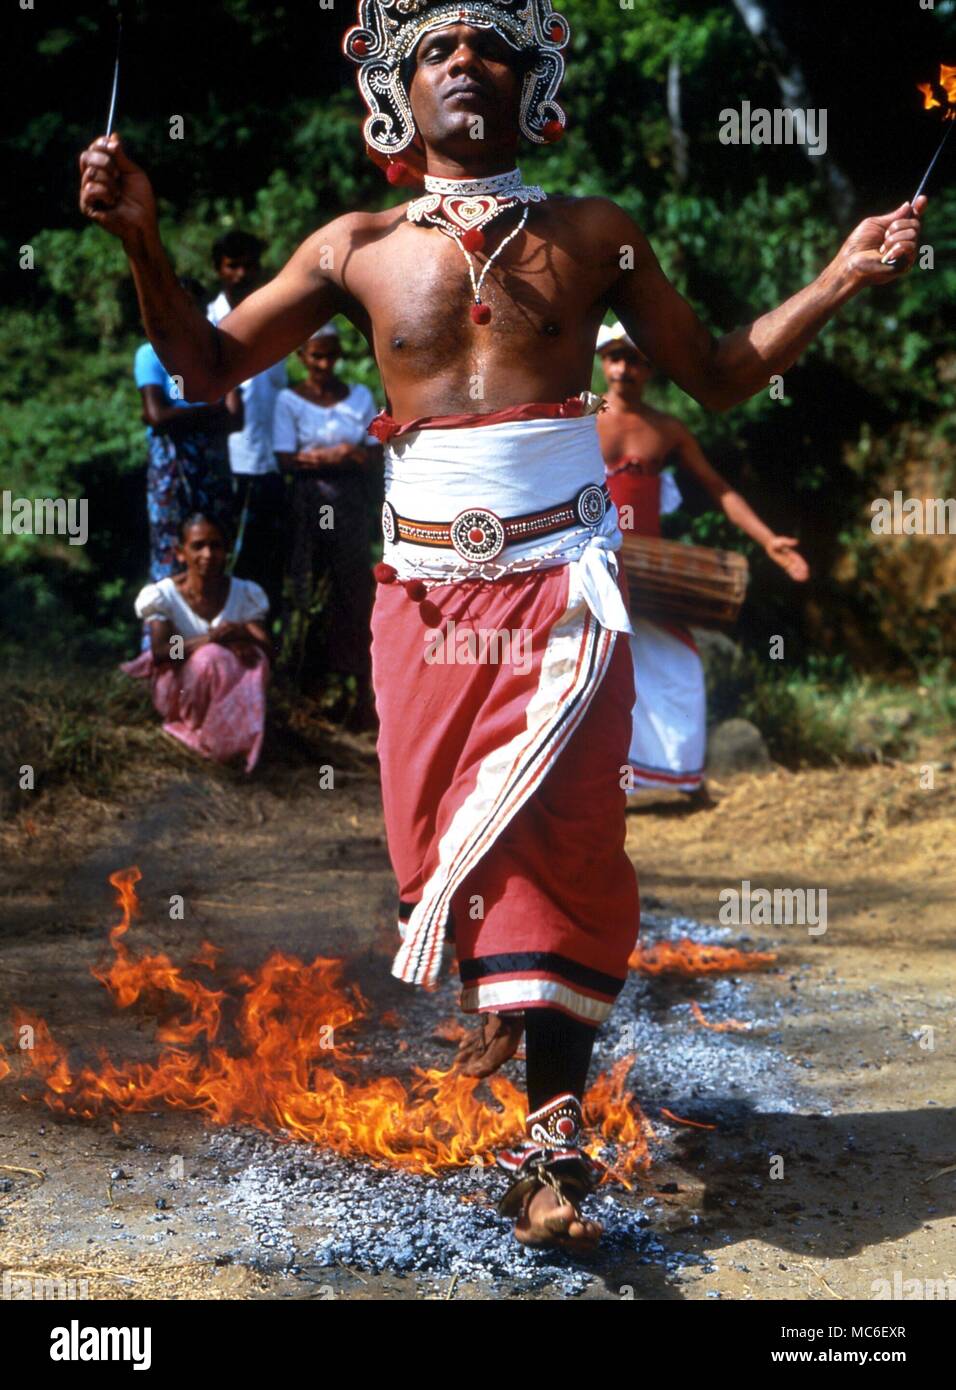 FIRE-senderistas Fire-walker caminar sobre carbones encendidos al ritual de tambores, en una aldea rural al norte de Kandy, Sri Lanka Foto de stock